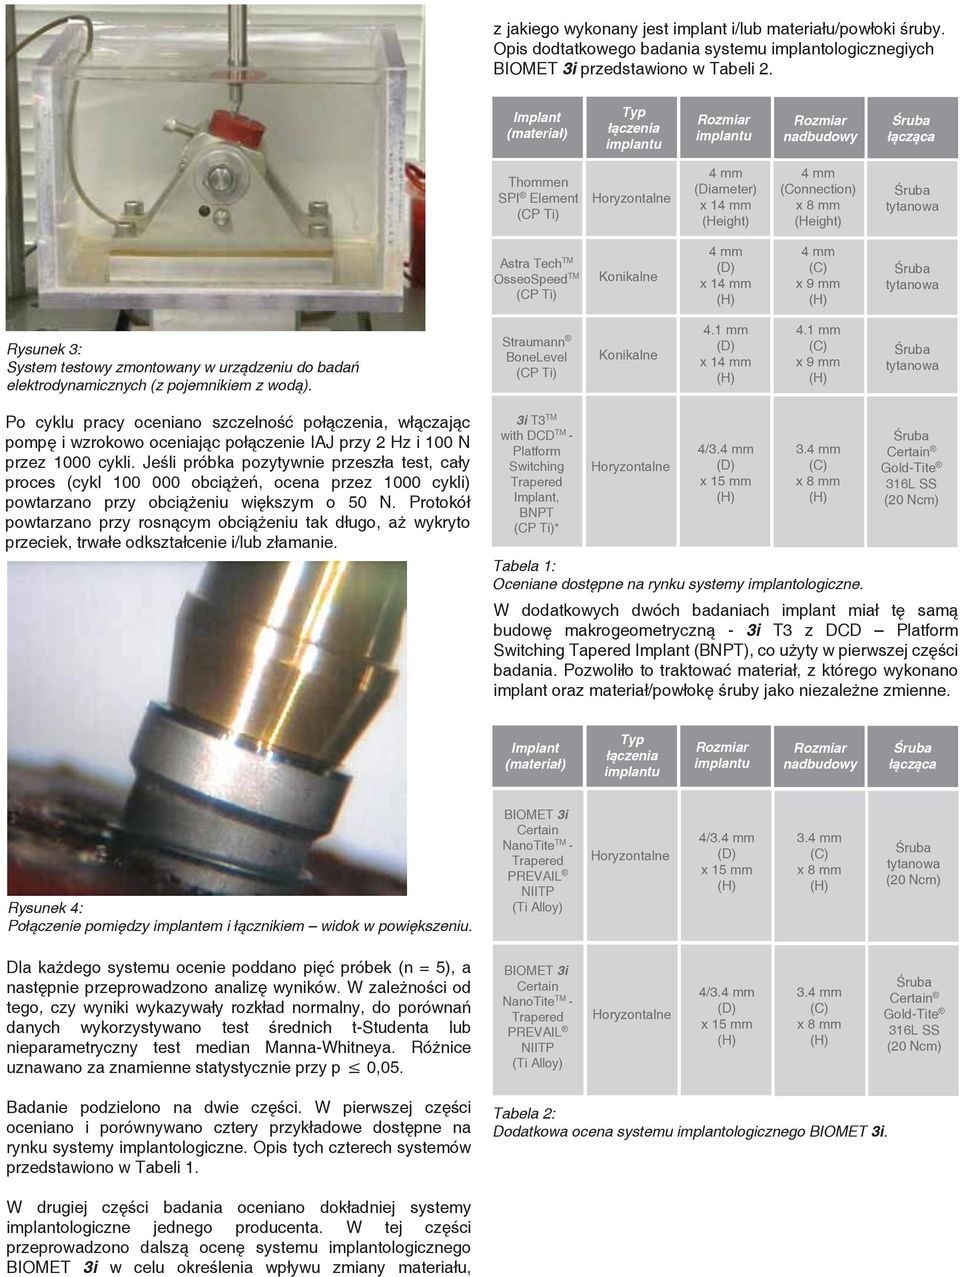 testowy zmontowany w urządzeniu do badań elektrodynamicznych (z pojemnikiem z wodą). Straumann BoneLevel (CP Ti) Konikalne 4.1 mm x 1 4.